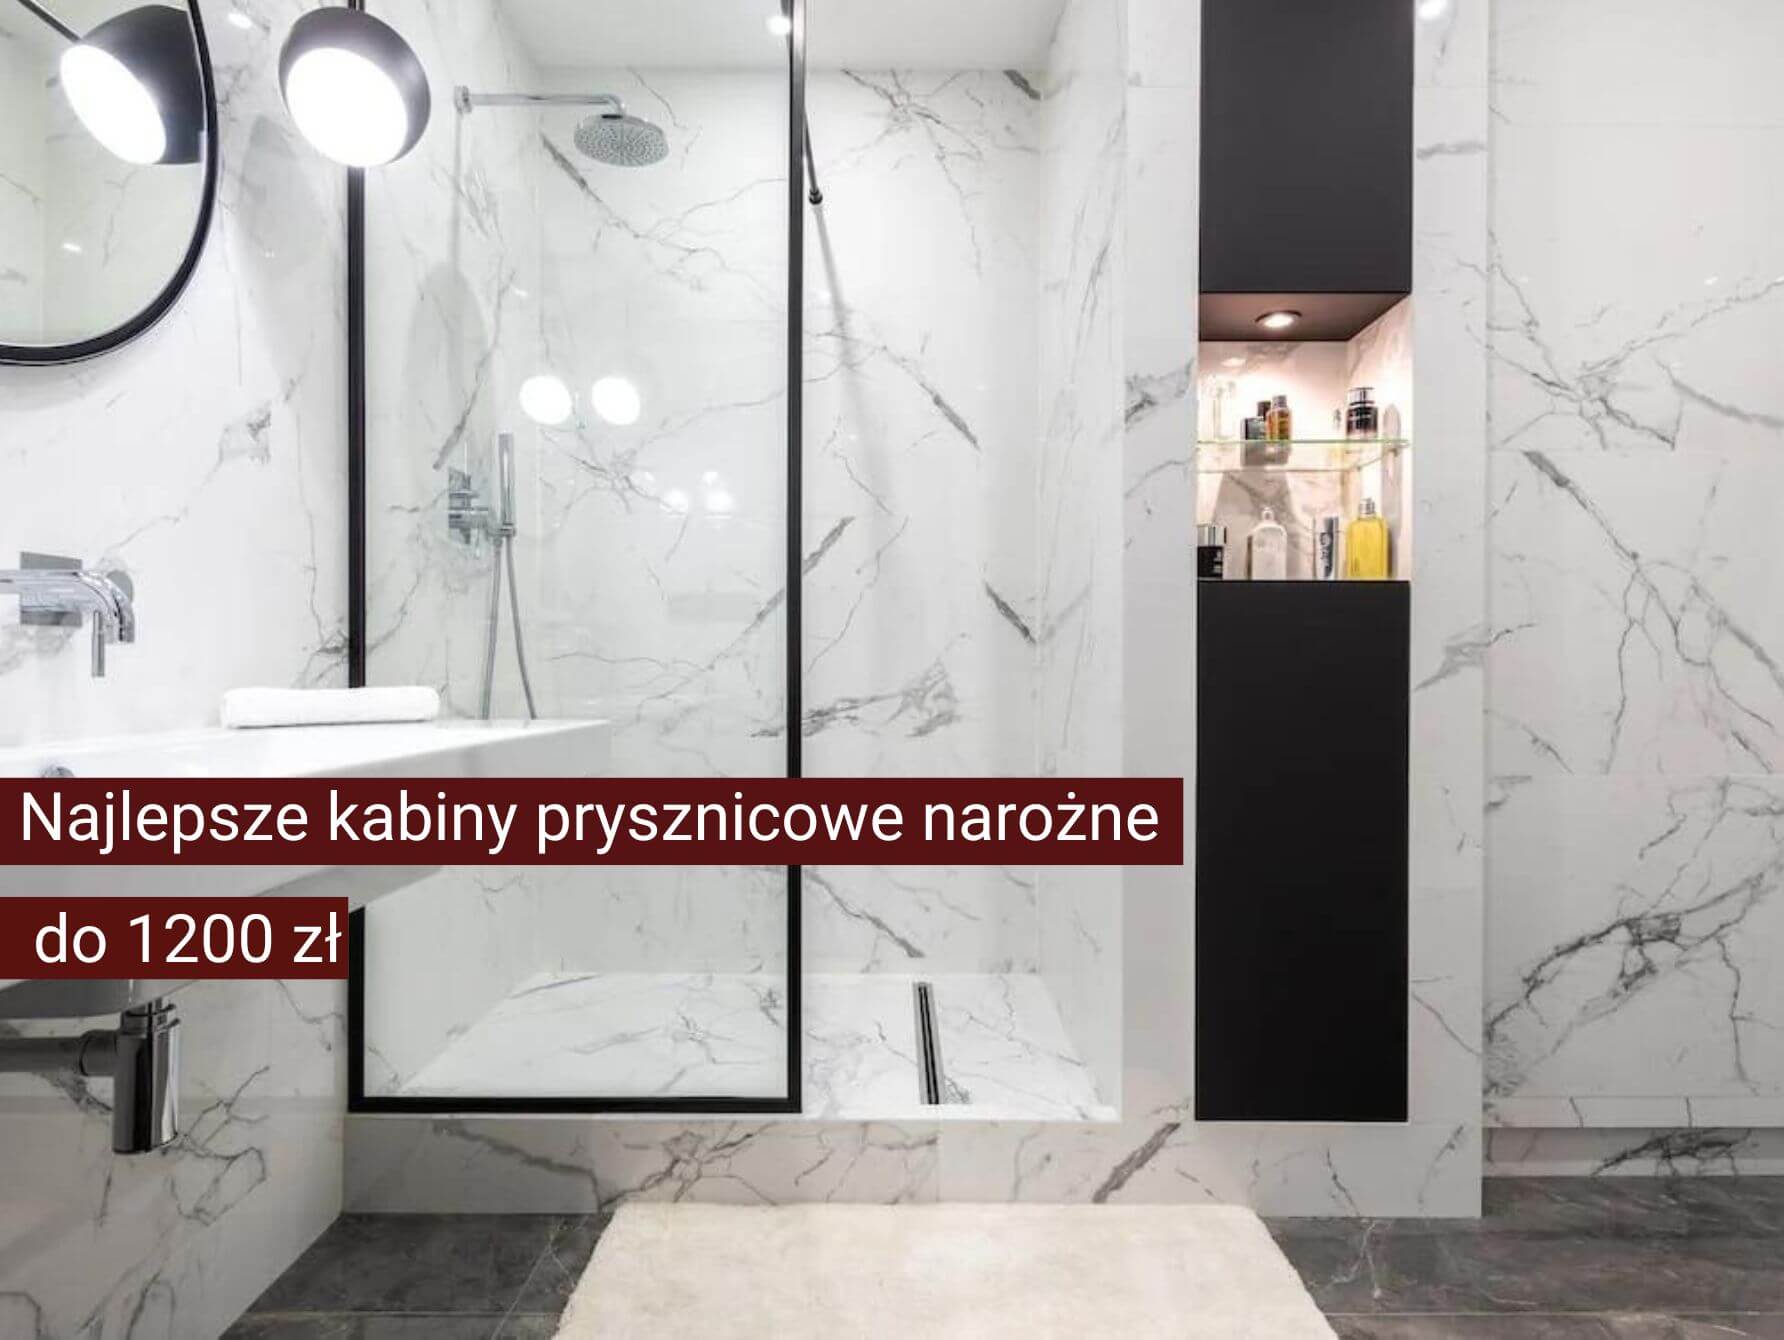 Ranking kabin prysznicowych narożnych 2022 – TOP 5 najlepszych kabin do 1200 zł